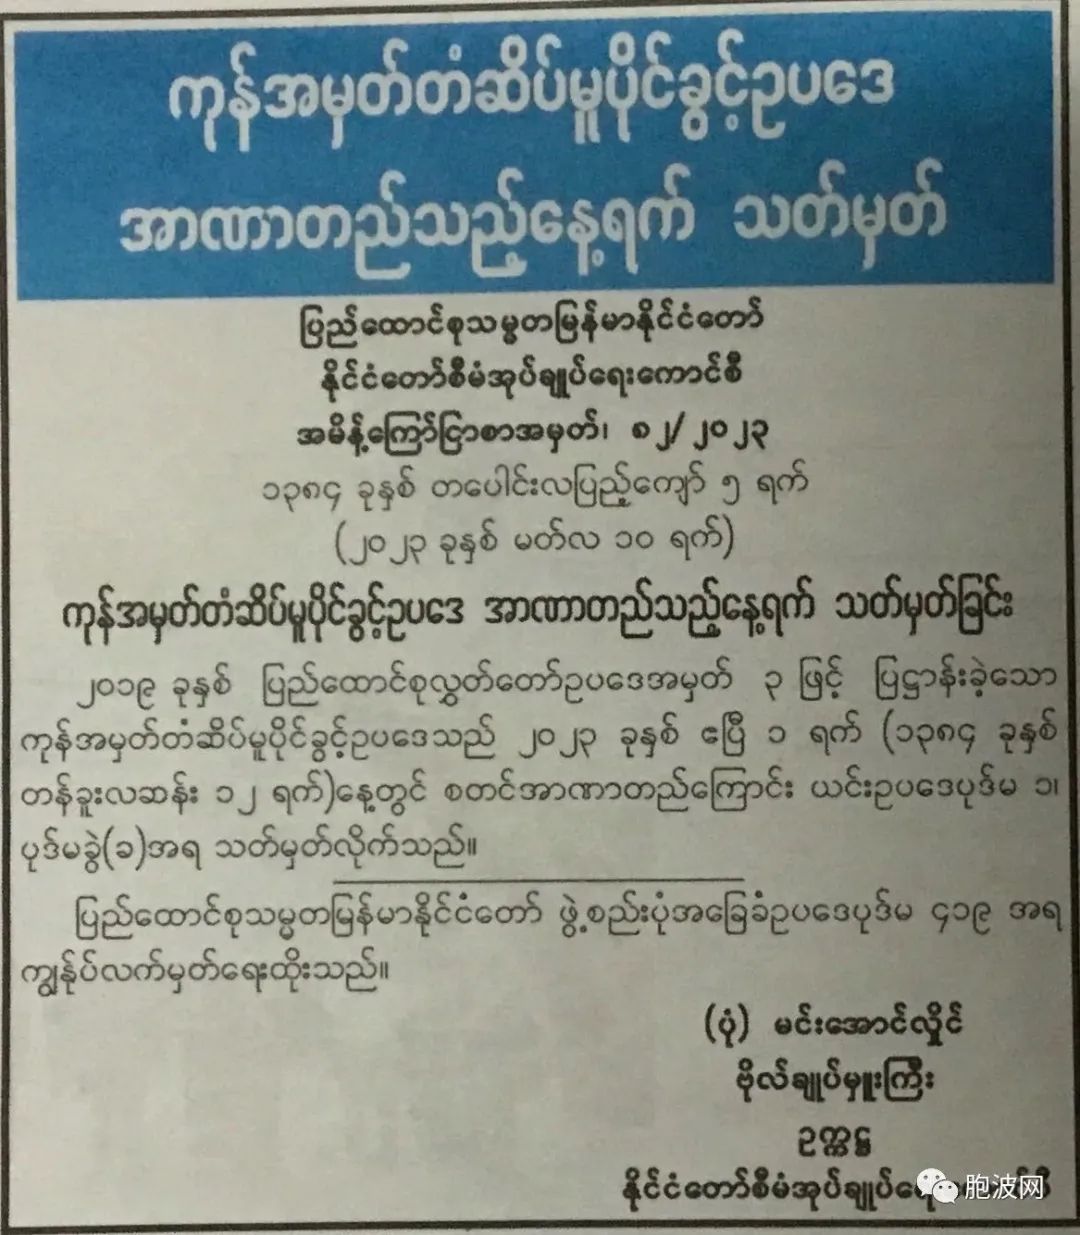 缅甸商标法将于4月1日开始生效